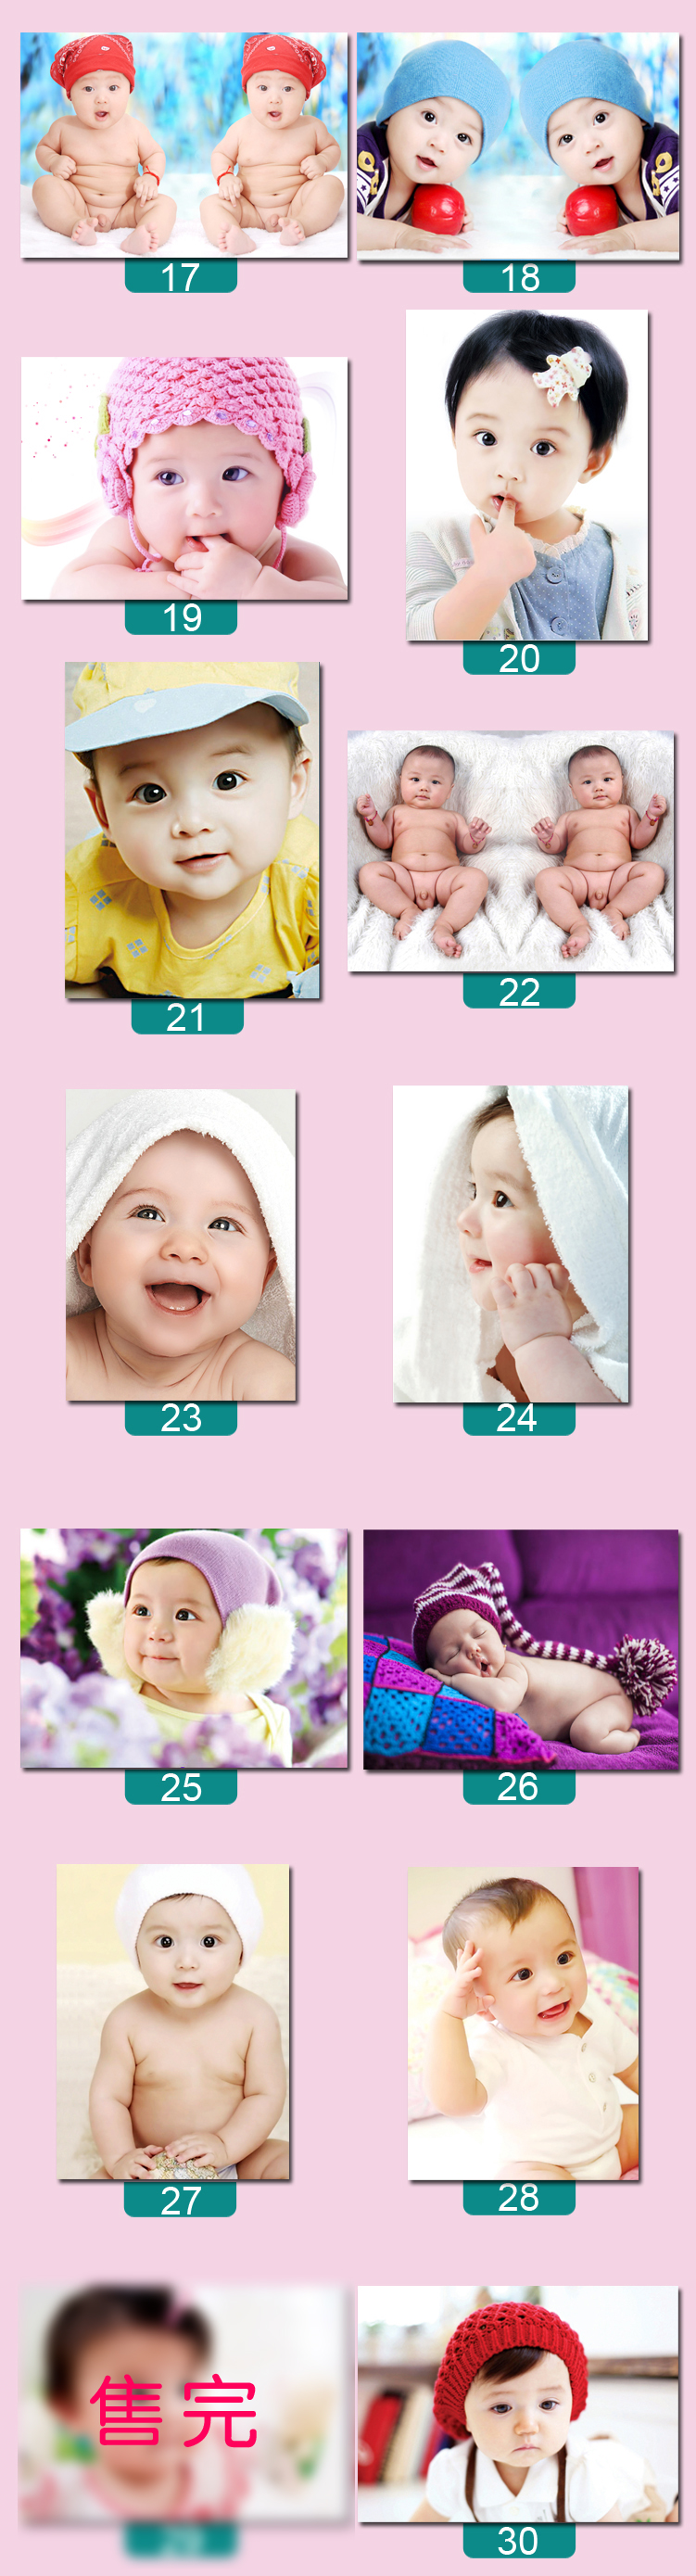 孕妇必备双胞胎宝宝照片挂图婴儿胎教海报龙凤胎男女墙贴早教图片